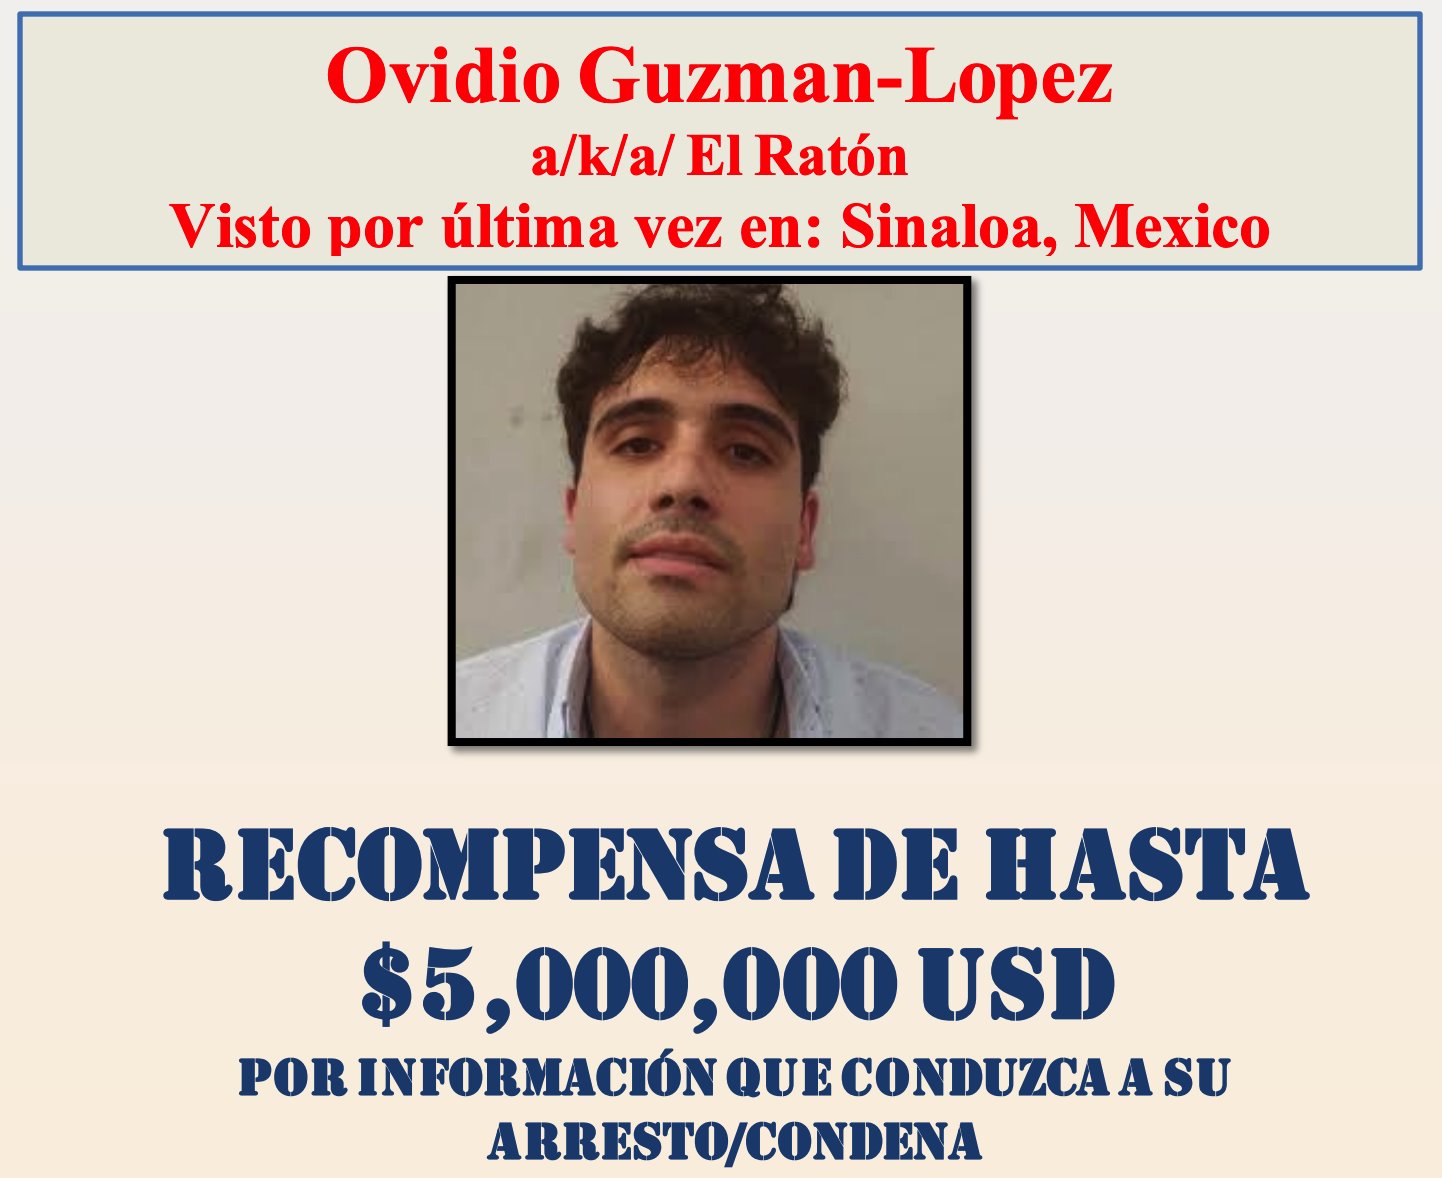 Cartel del gobierno de EE.UU. de recompensa por información sobre Ovidio Guzmán